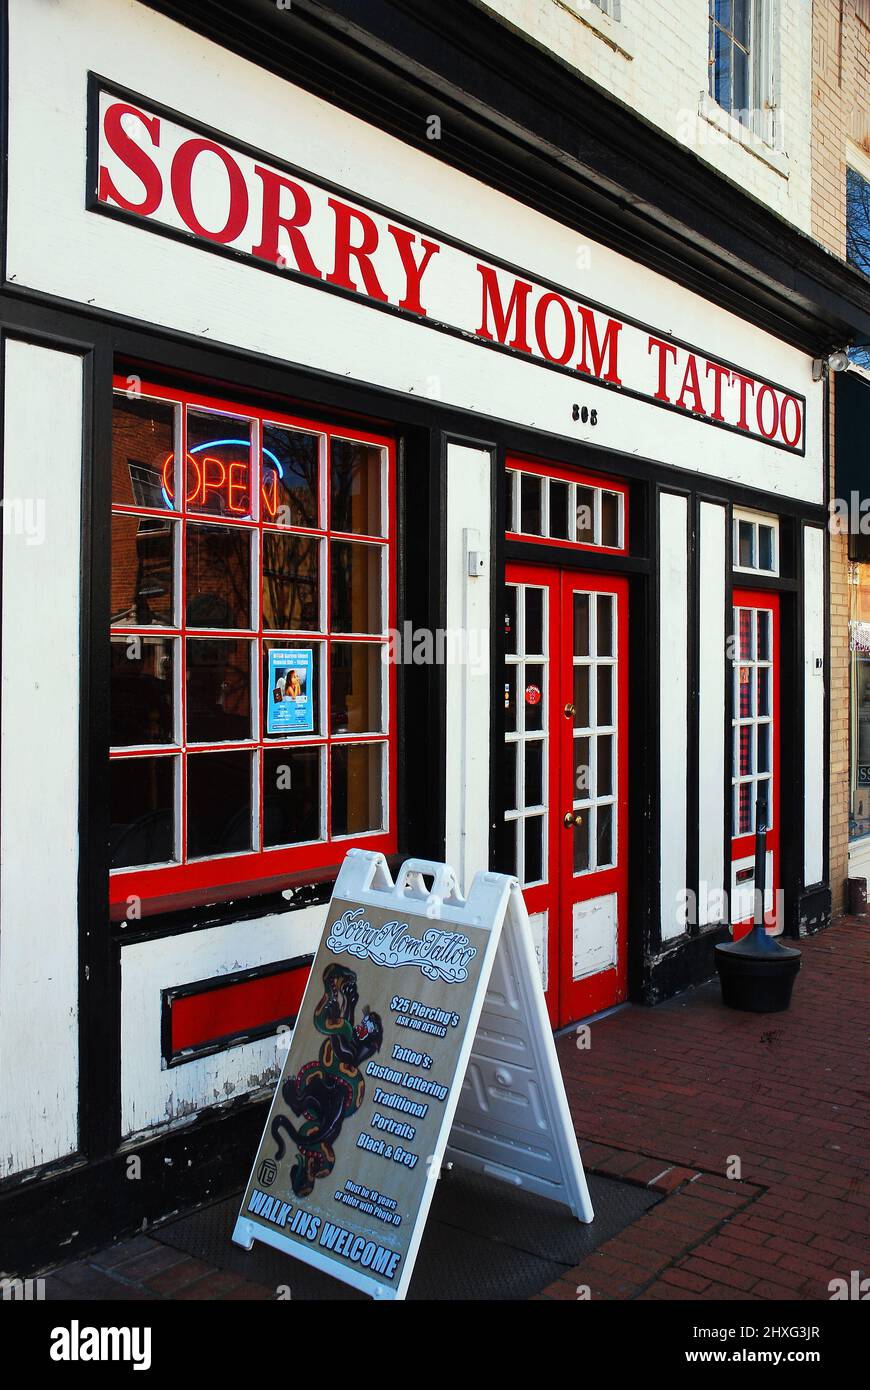 Un salon de tatouage choisit un nom plus humoristique pour leur établissement Banque D'Images